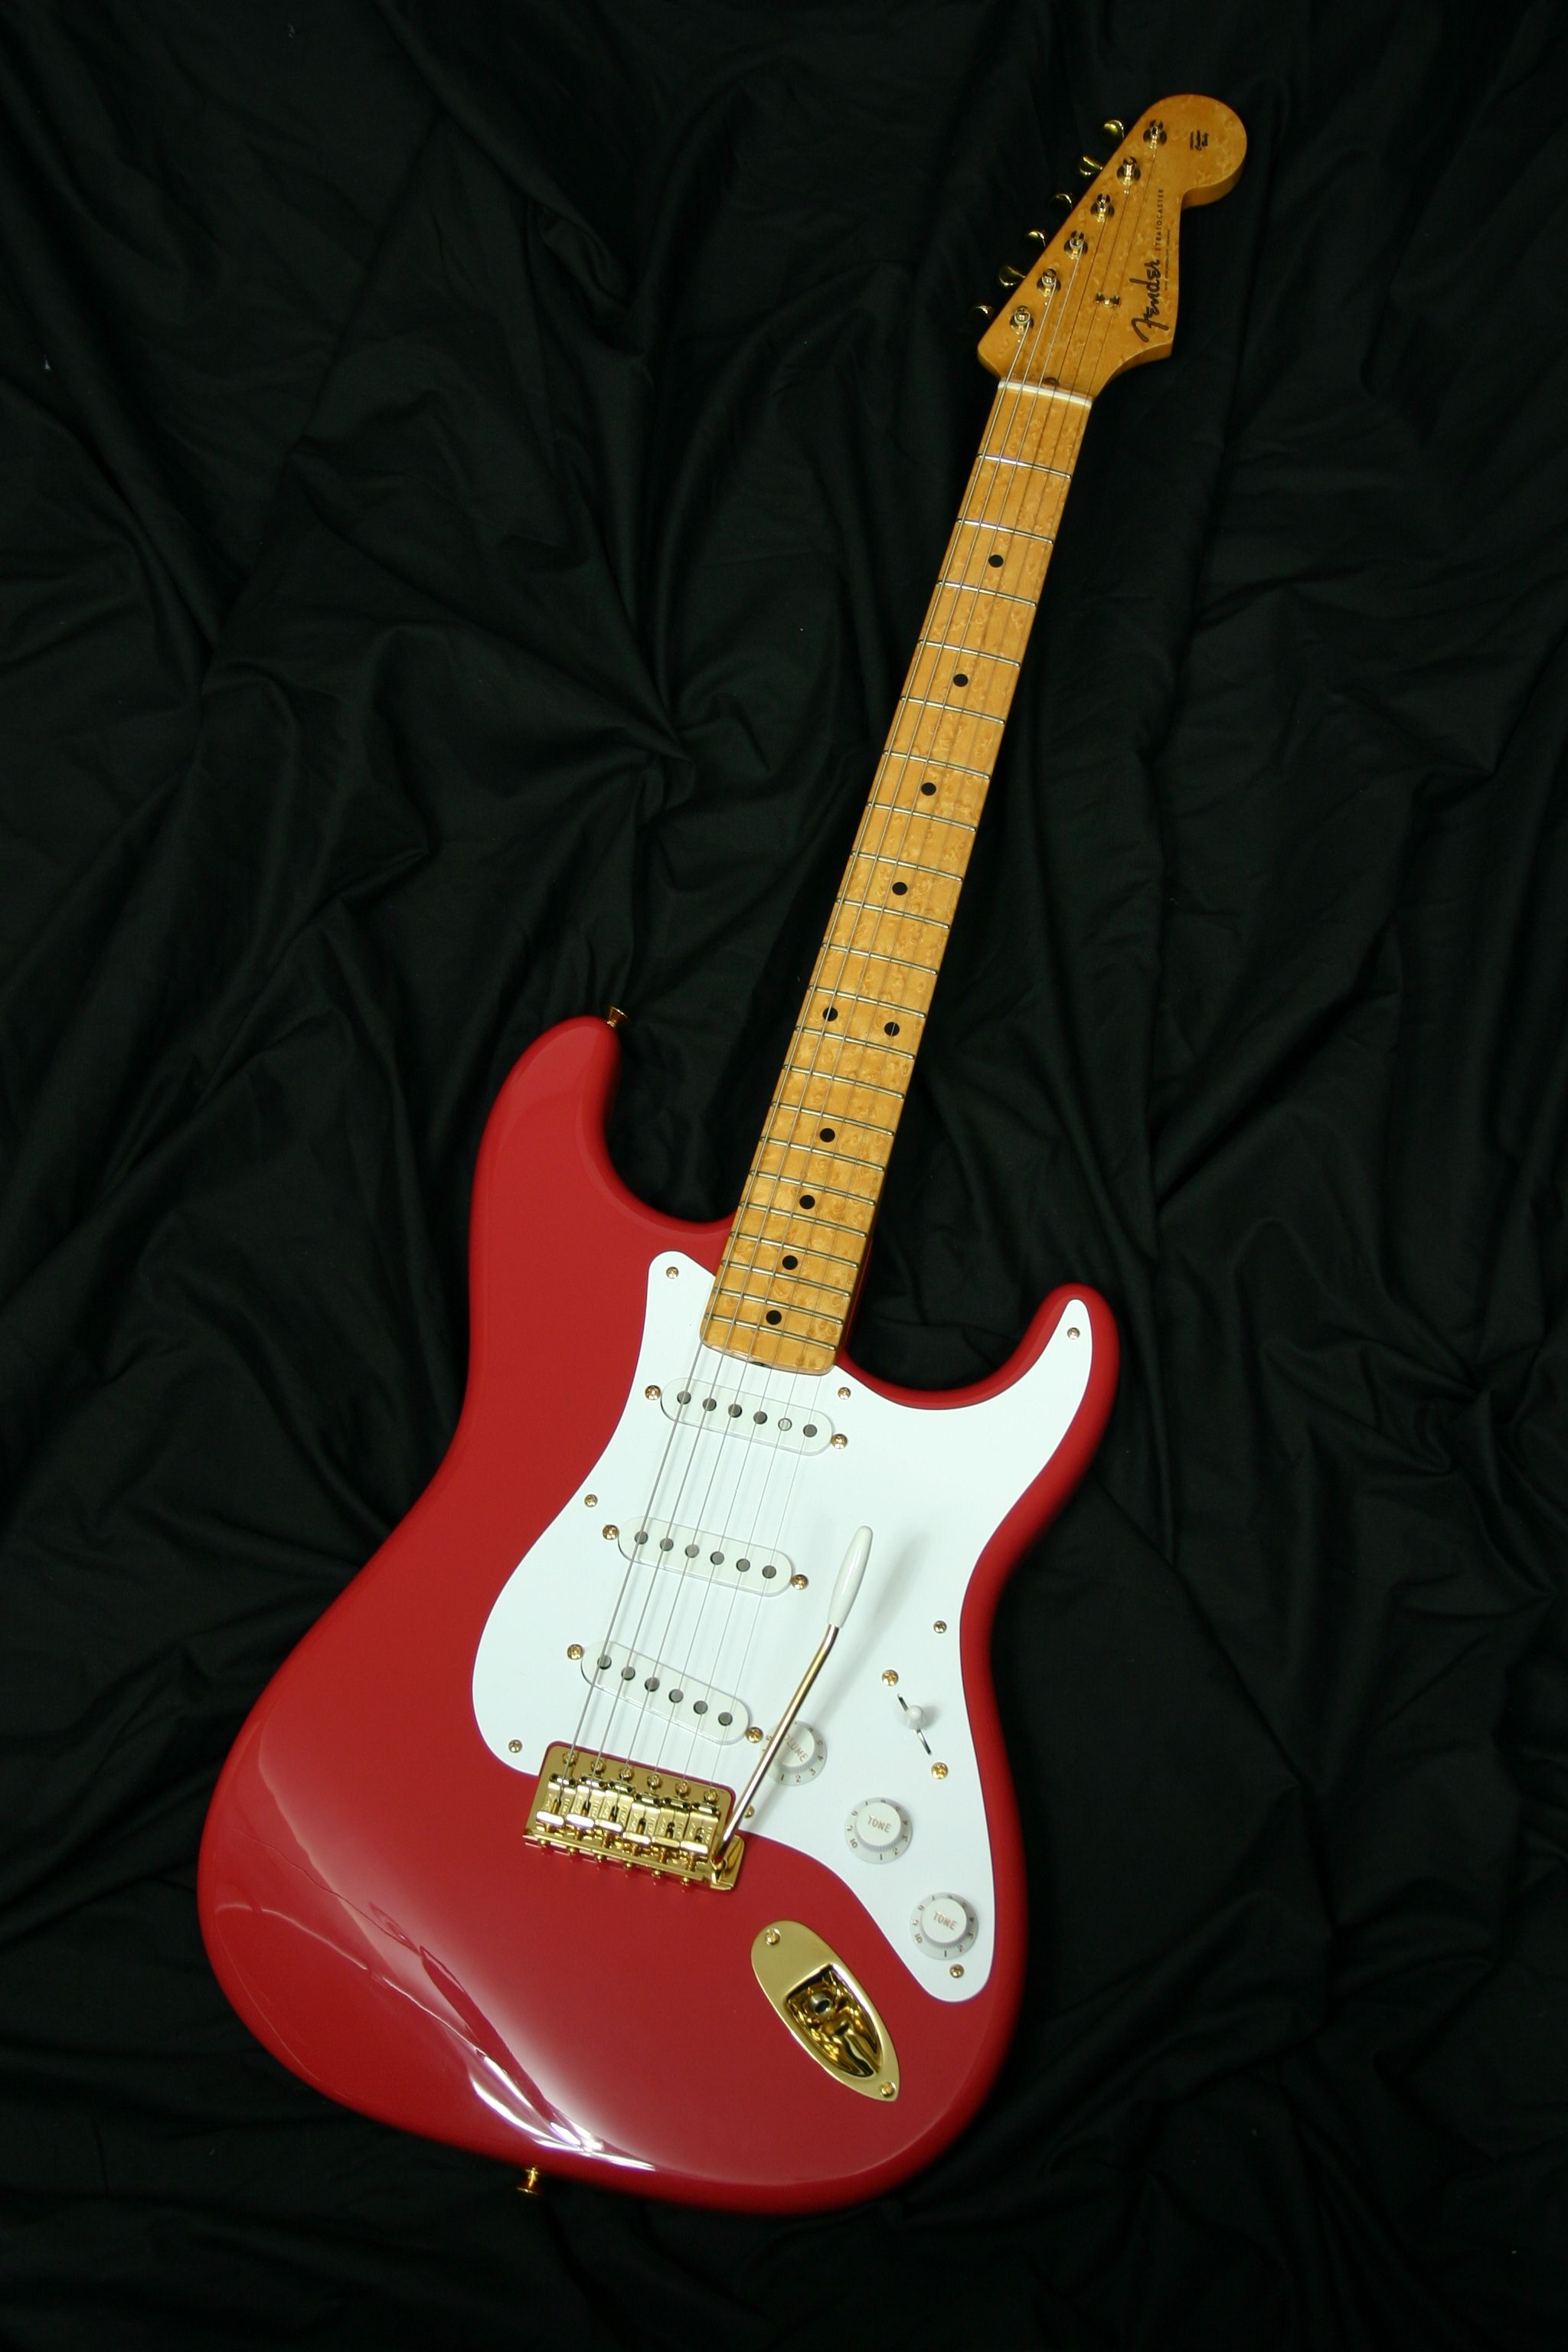 Fender Electric Guitar Wallpapergoleilamccoy693.blogspot.com